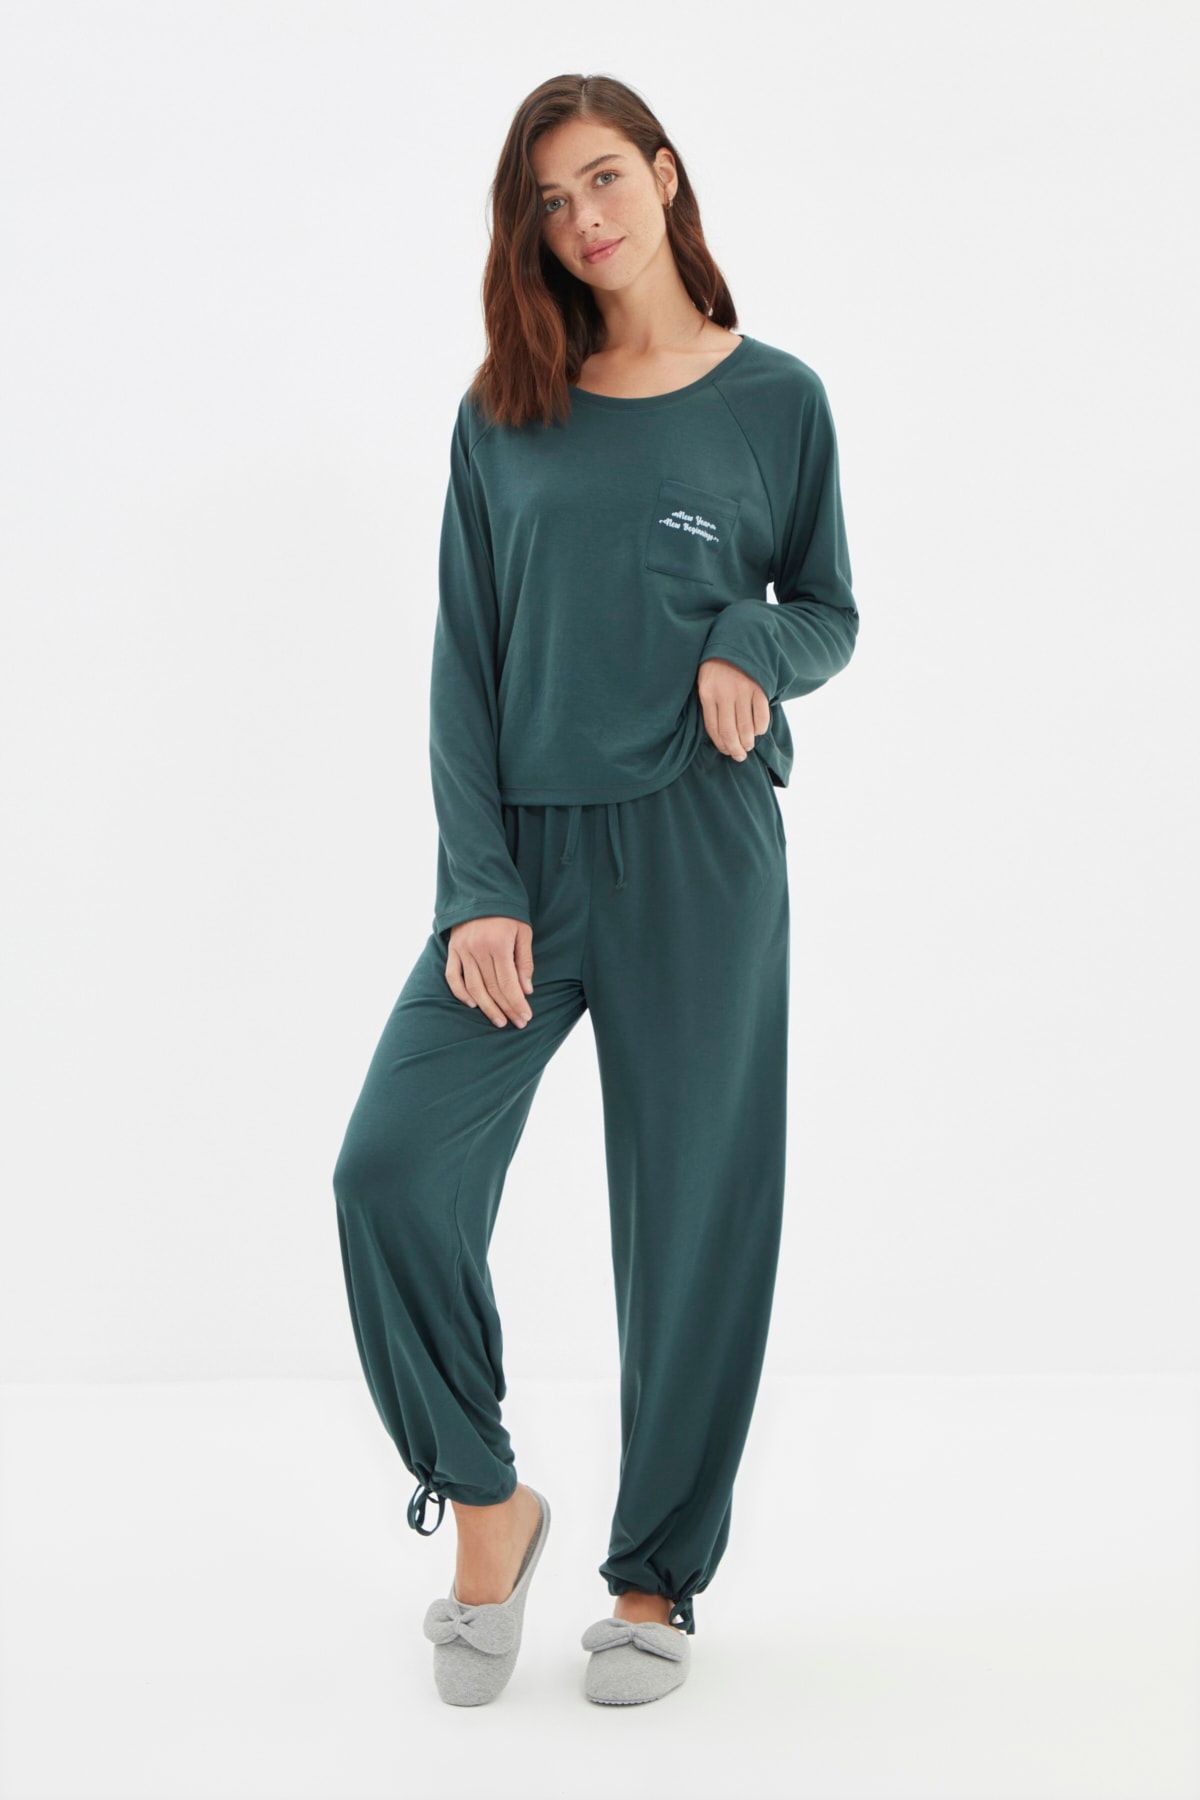 TRENDYOLMİLLA Yeşil Yılbaşı Temalı Baskılı Örme Pijama Takımı THMAW22PT0766